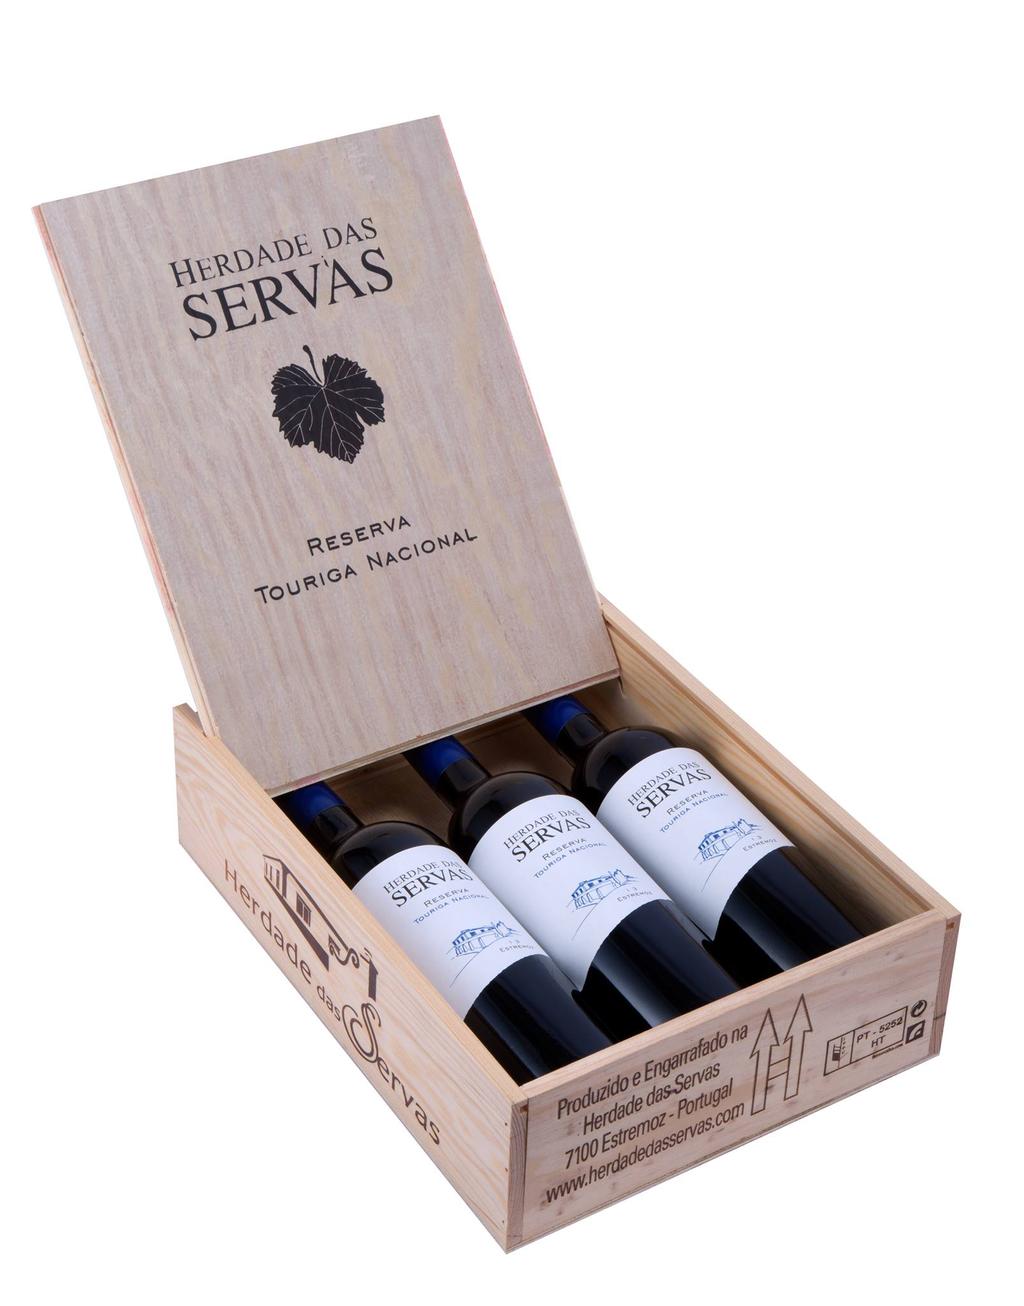 Herdade das Servas maakt volgens velen de meest evenwichtige en complexe wijnen van de Alentejo en is één van de quintas uit de Alentejo met de langste traditie in de wijnbouw.